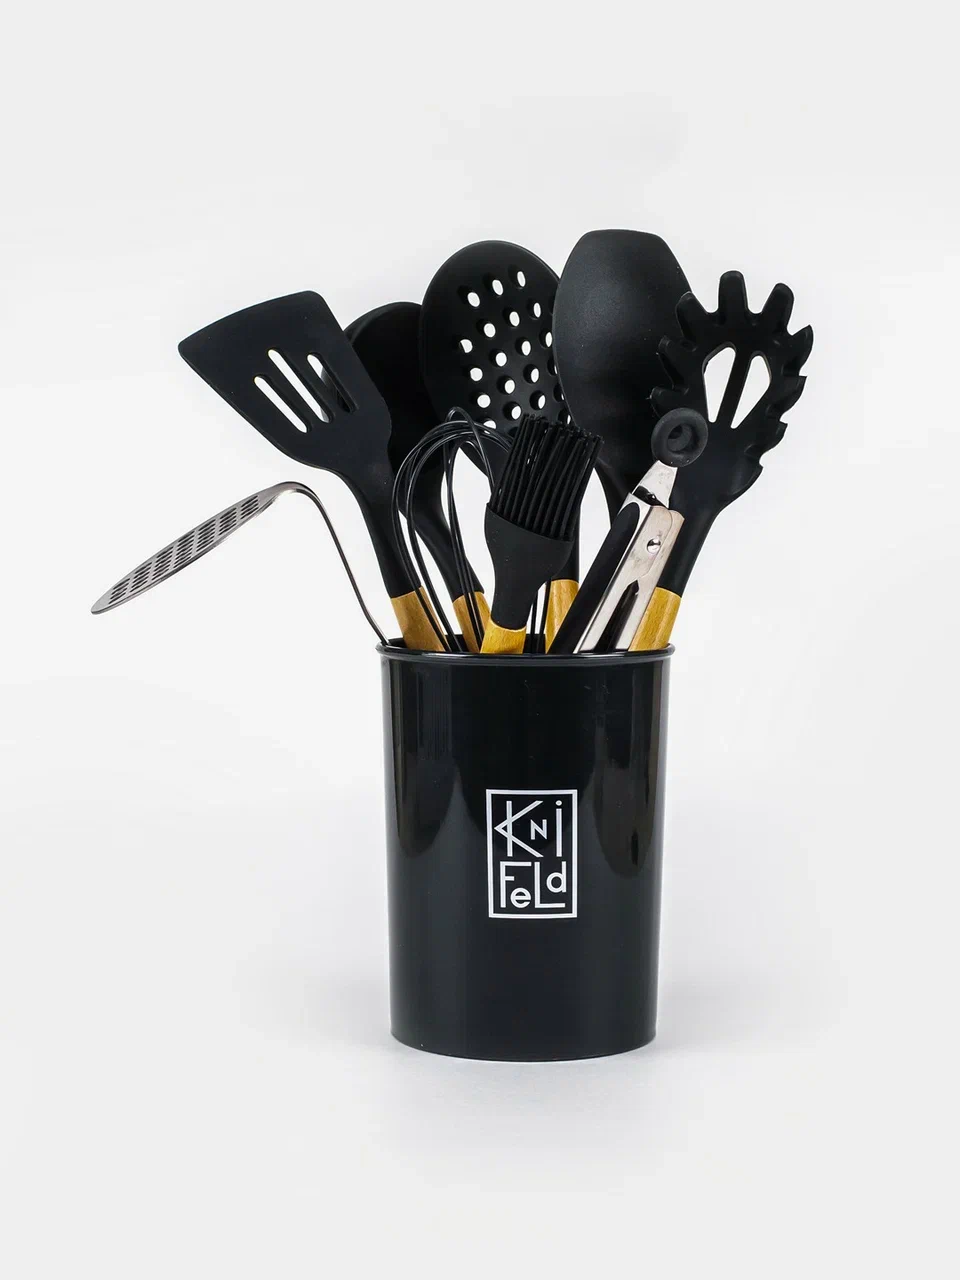 Набор кухонных принадлежностей Knifeld 10 предметов темно-серый